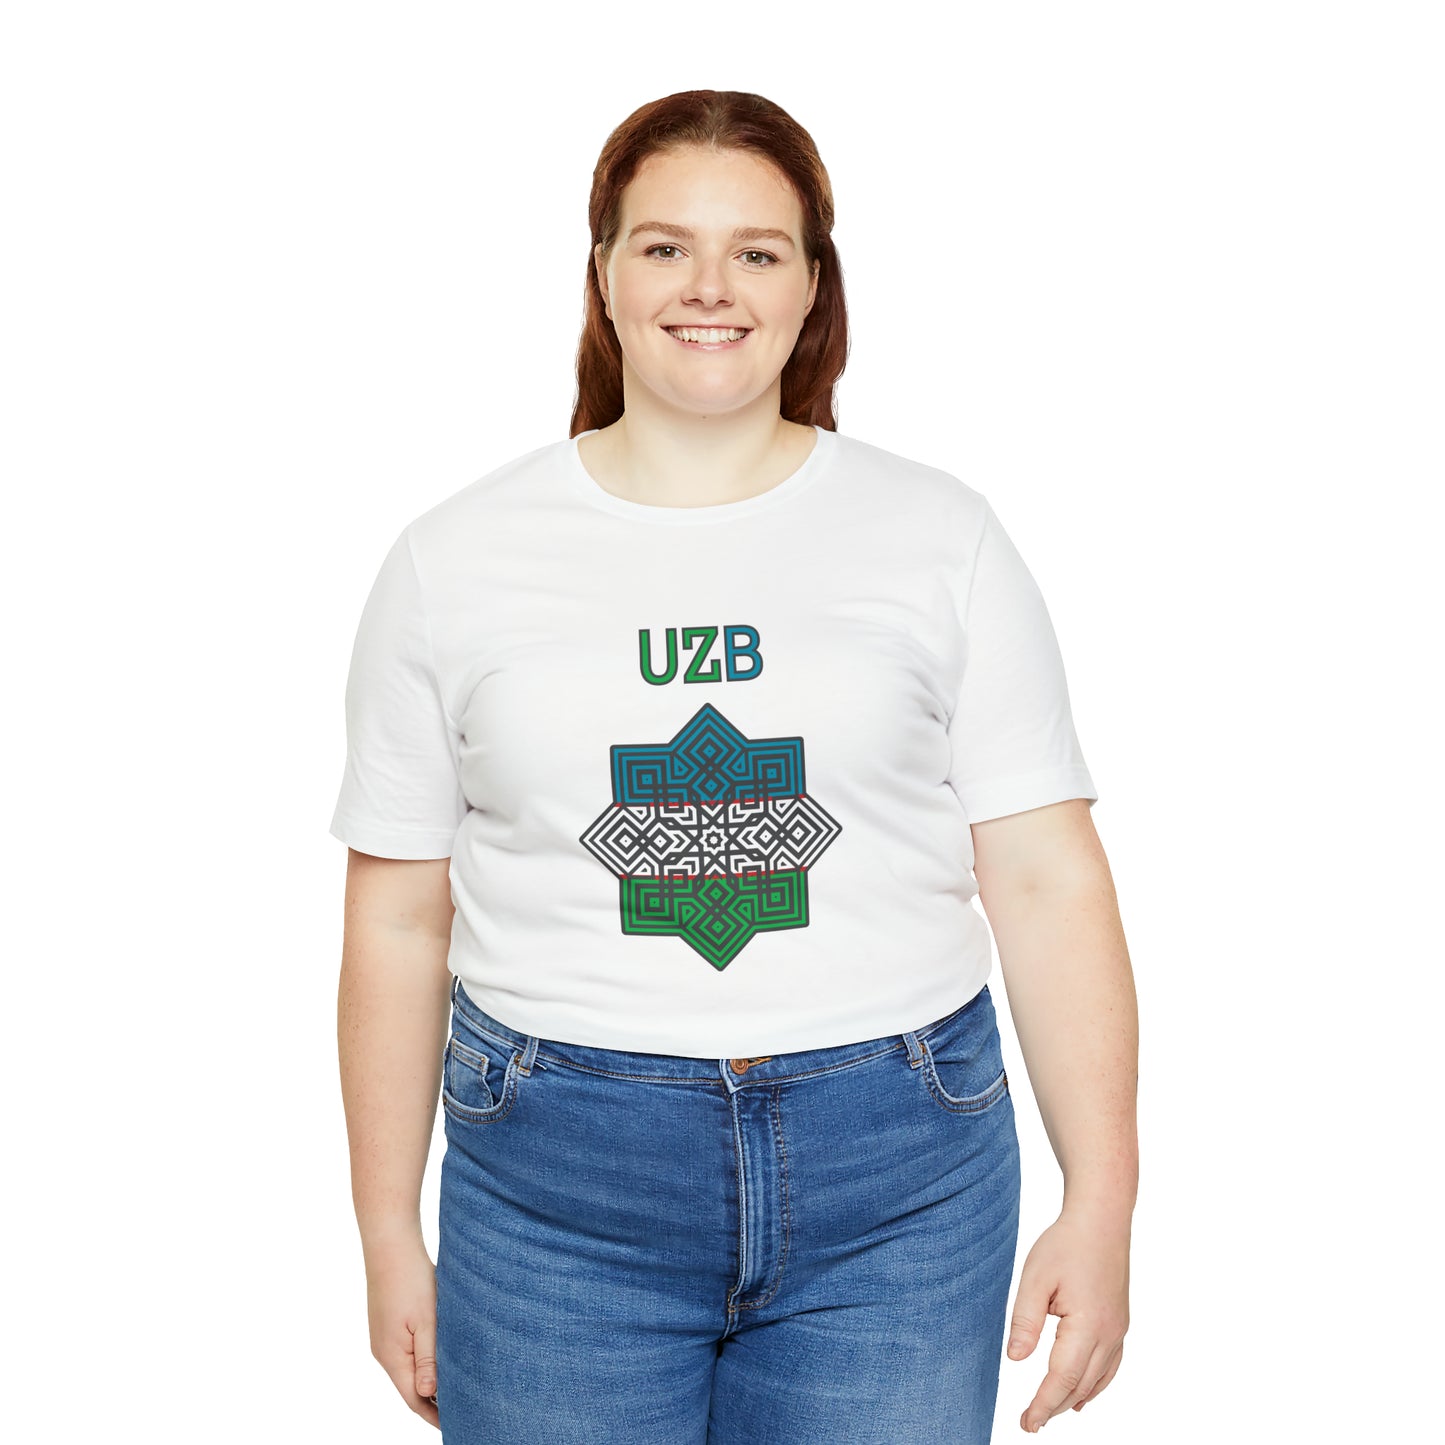 UZB Emblem Unisex T-Shirt